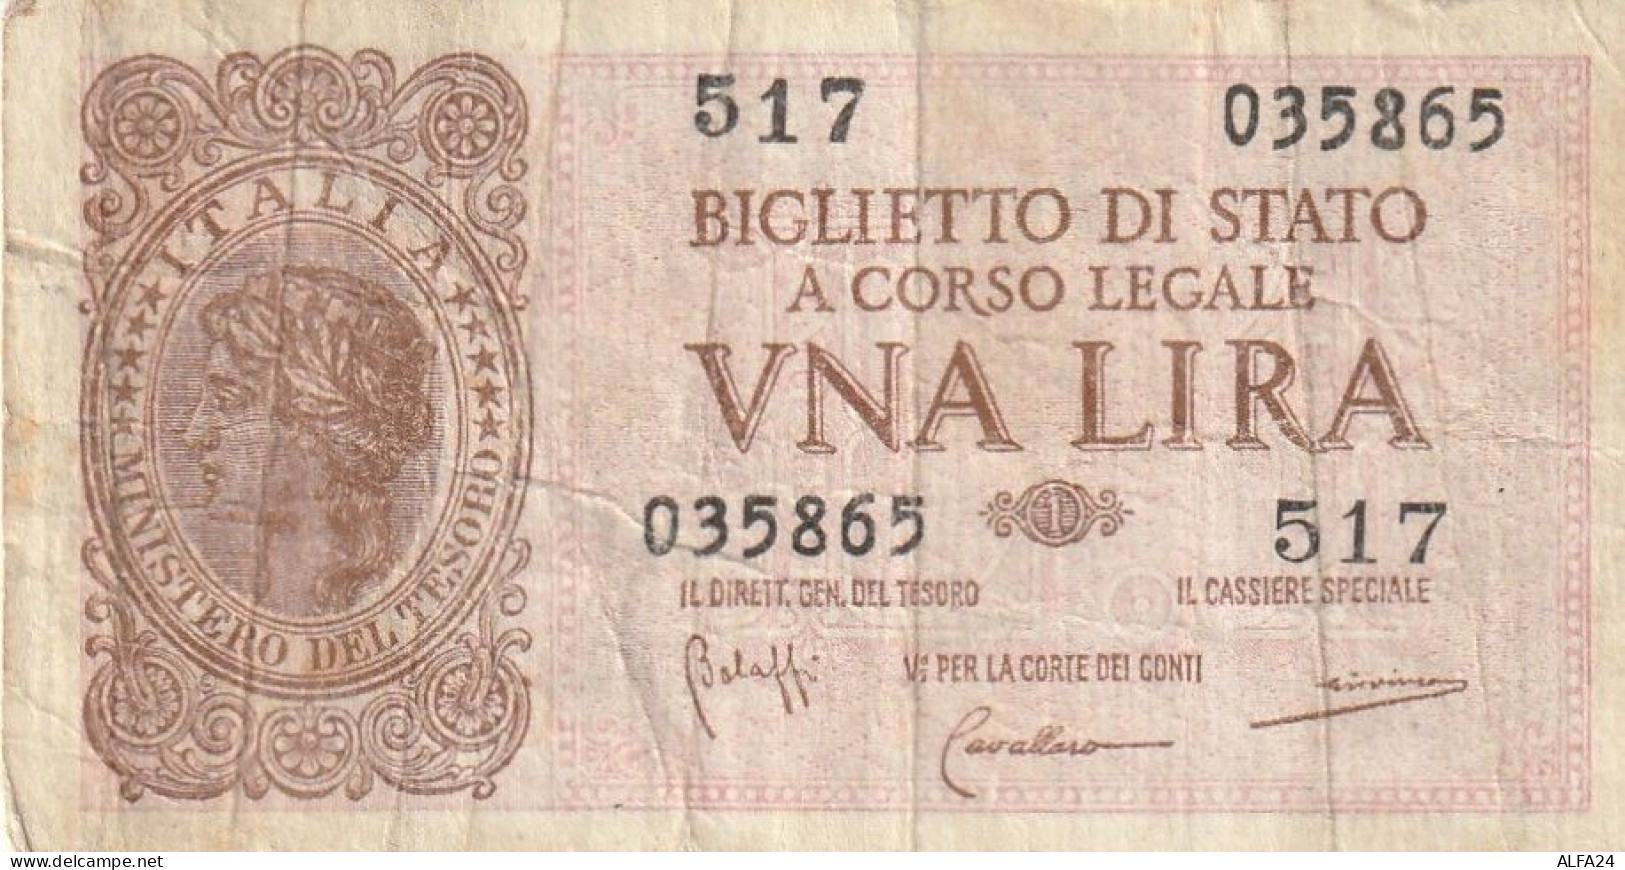 BANCONOTA BIGLIETTO DI STATO ITALIA 1 LIRA VF  (B_362 - Italië – 1 Lira